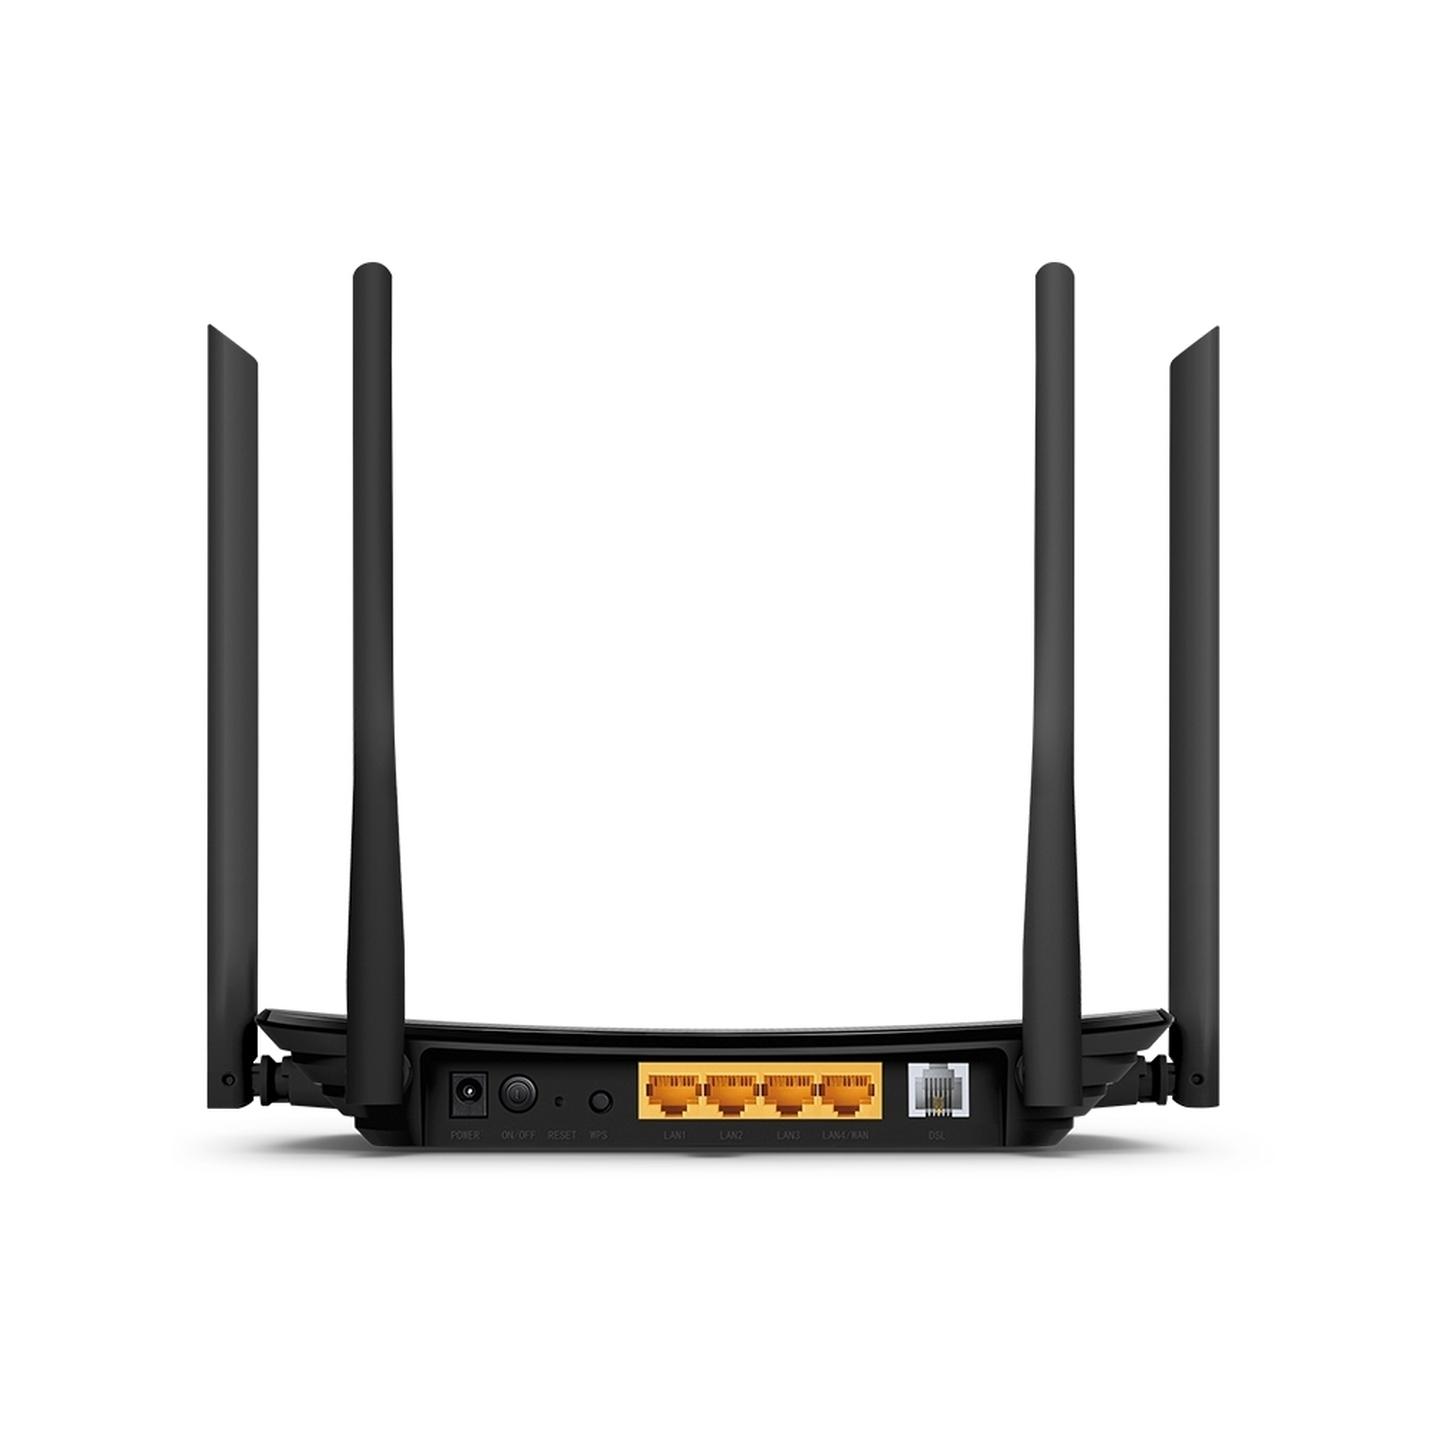 TP-Link VR300 VDSL/ADSL AC1200 Modem Router